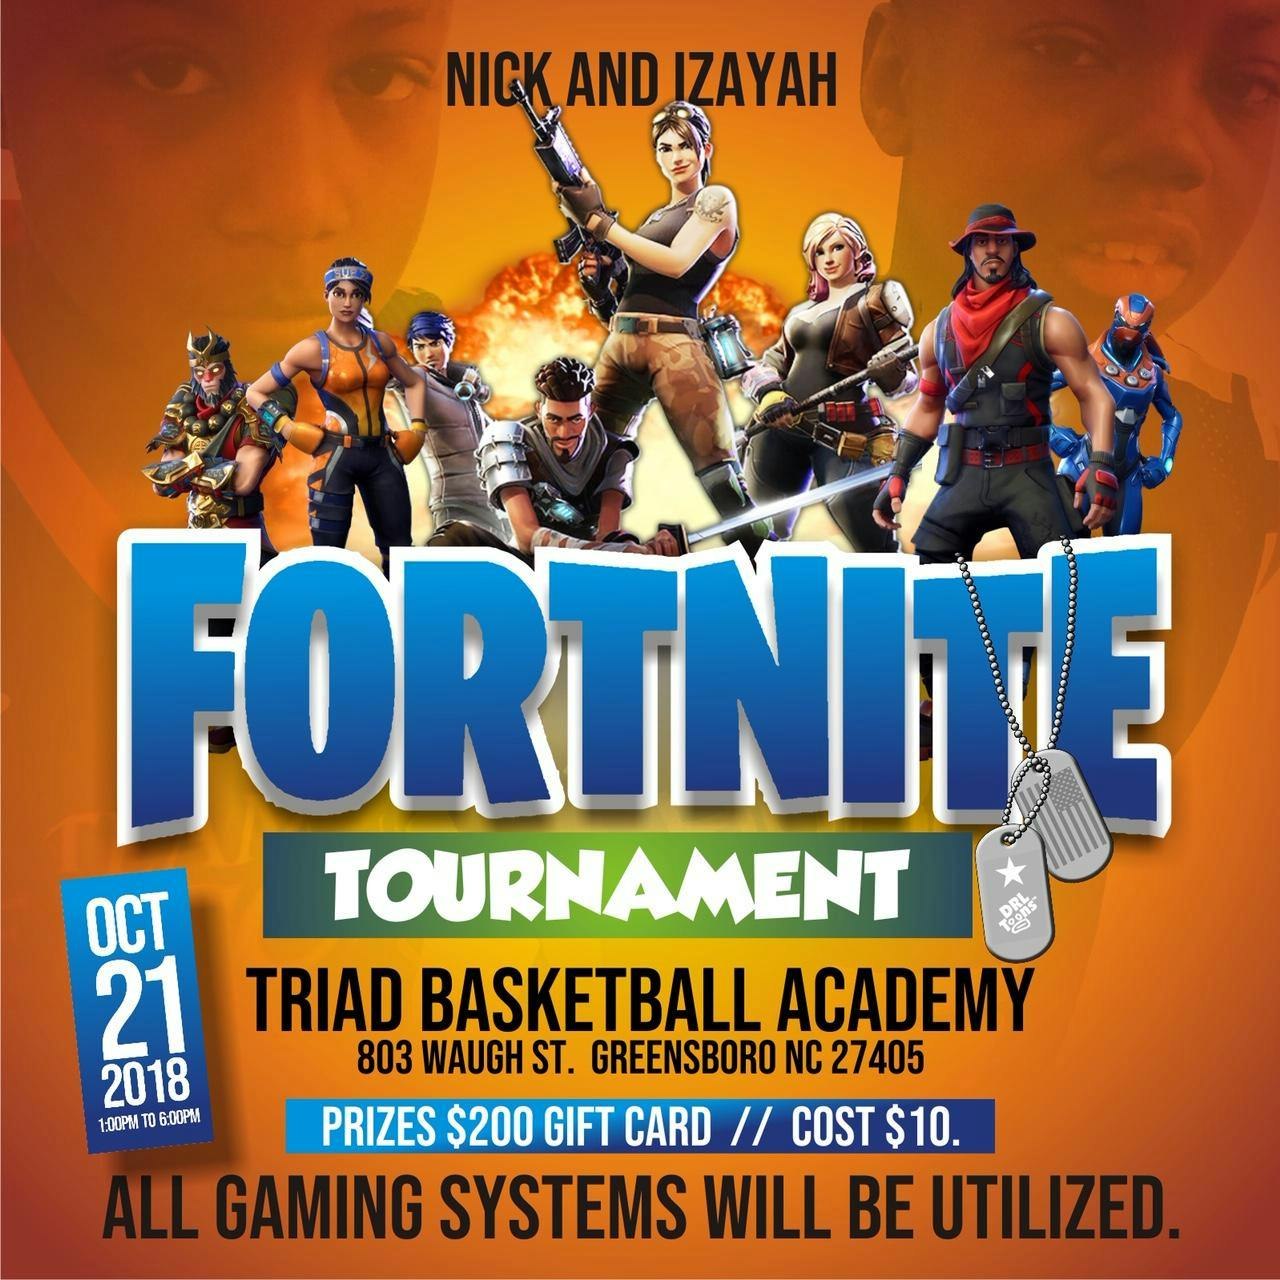 Fortnite Tournament Greensboro Nc Nick Zay Fortnite Tournament 21 Oct 2018